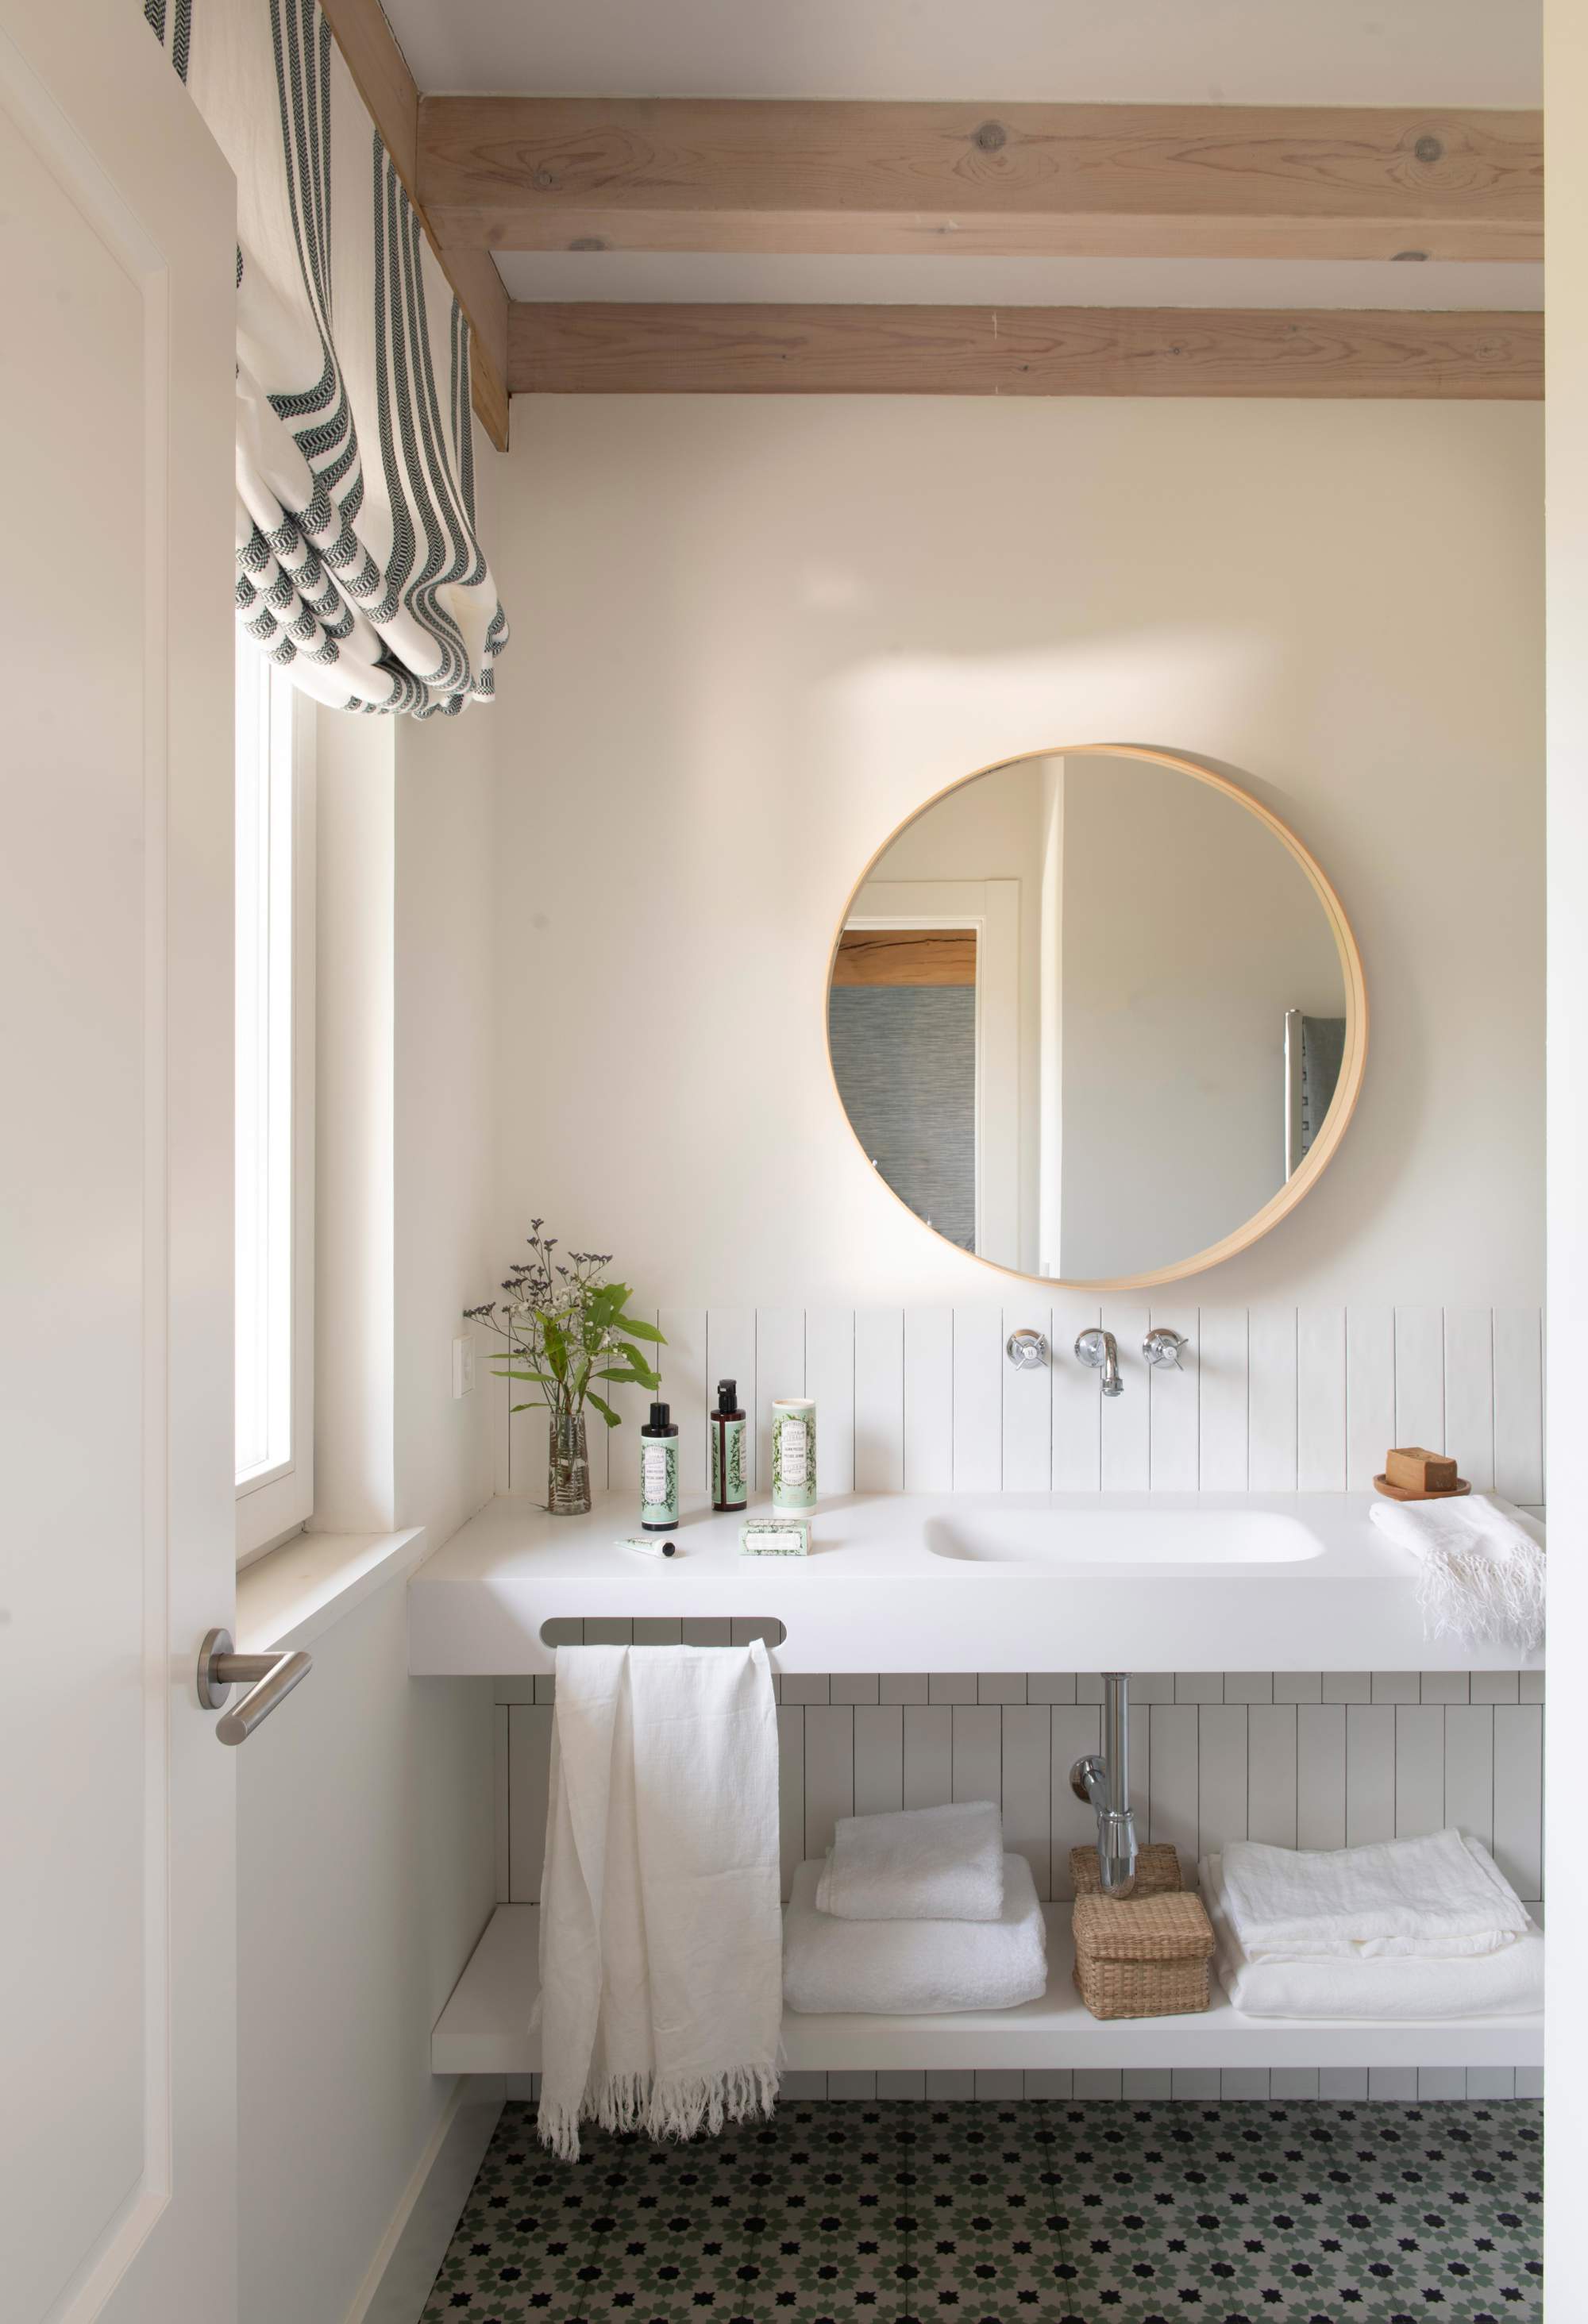 Baño con mueble volado en blanco y espejo redondo